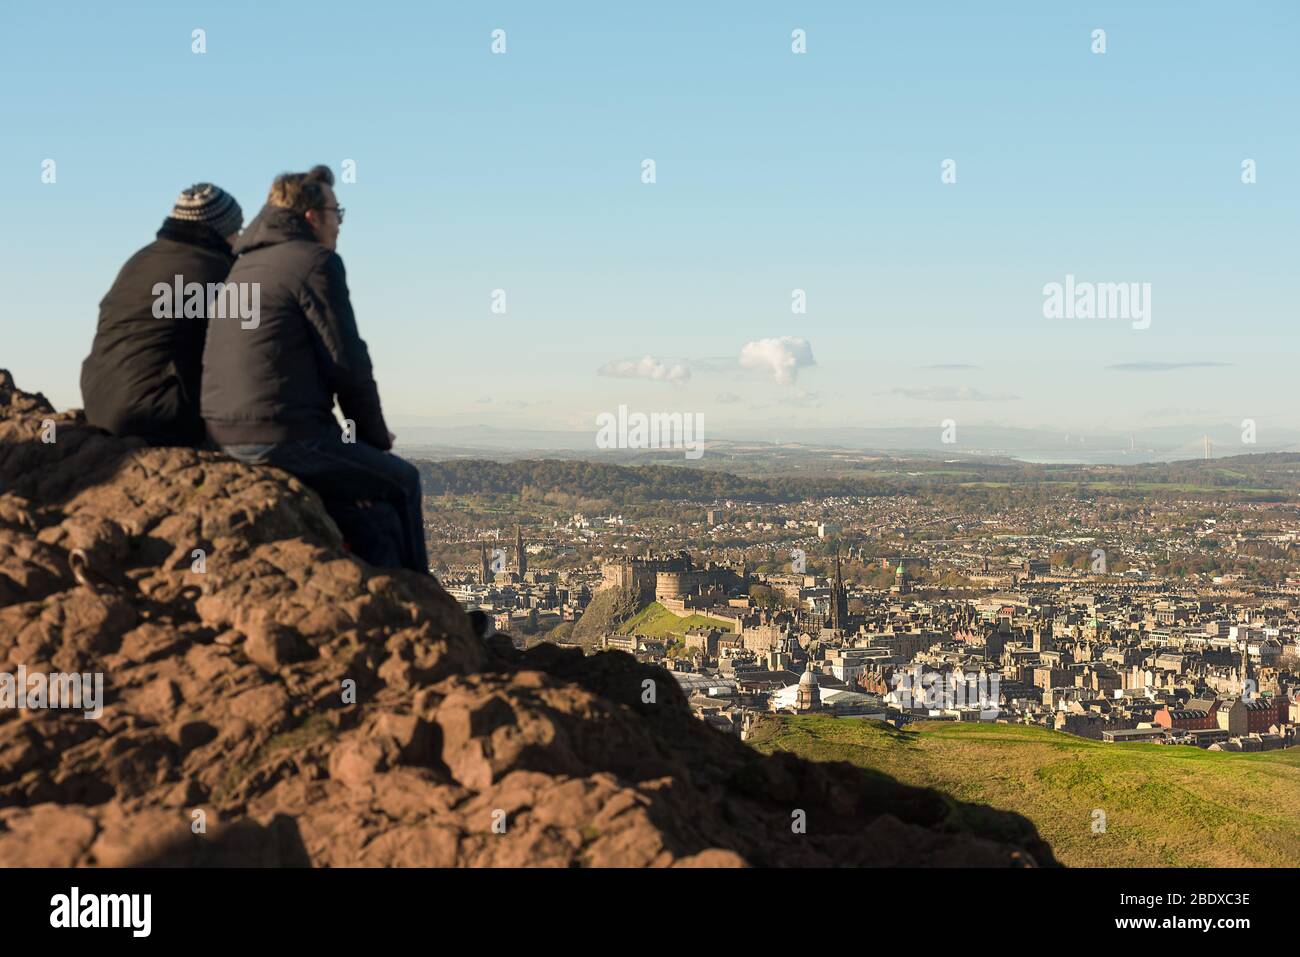 Una pareja se sienta en la parte superior de Arthurs Seat, un volcán inactivo, con vistas a la ciudad de Edimburgo y el Castillo de Edimburgo, Escocia. Foto de stock